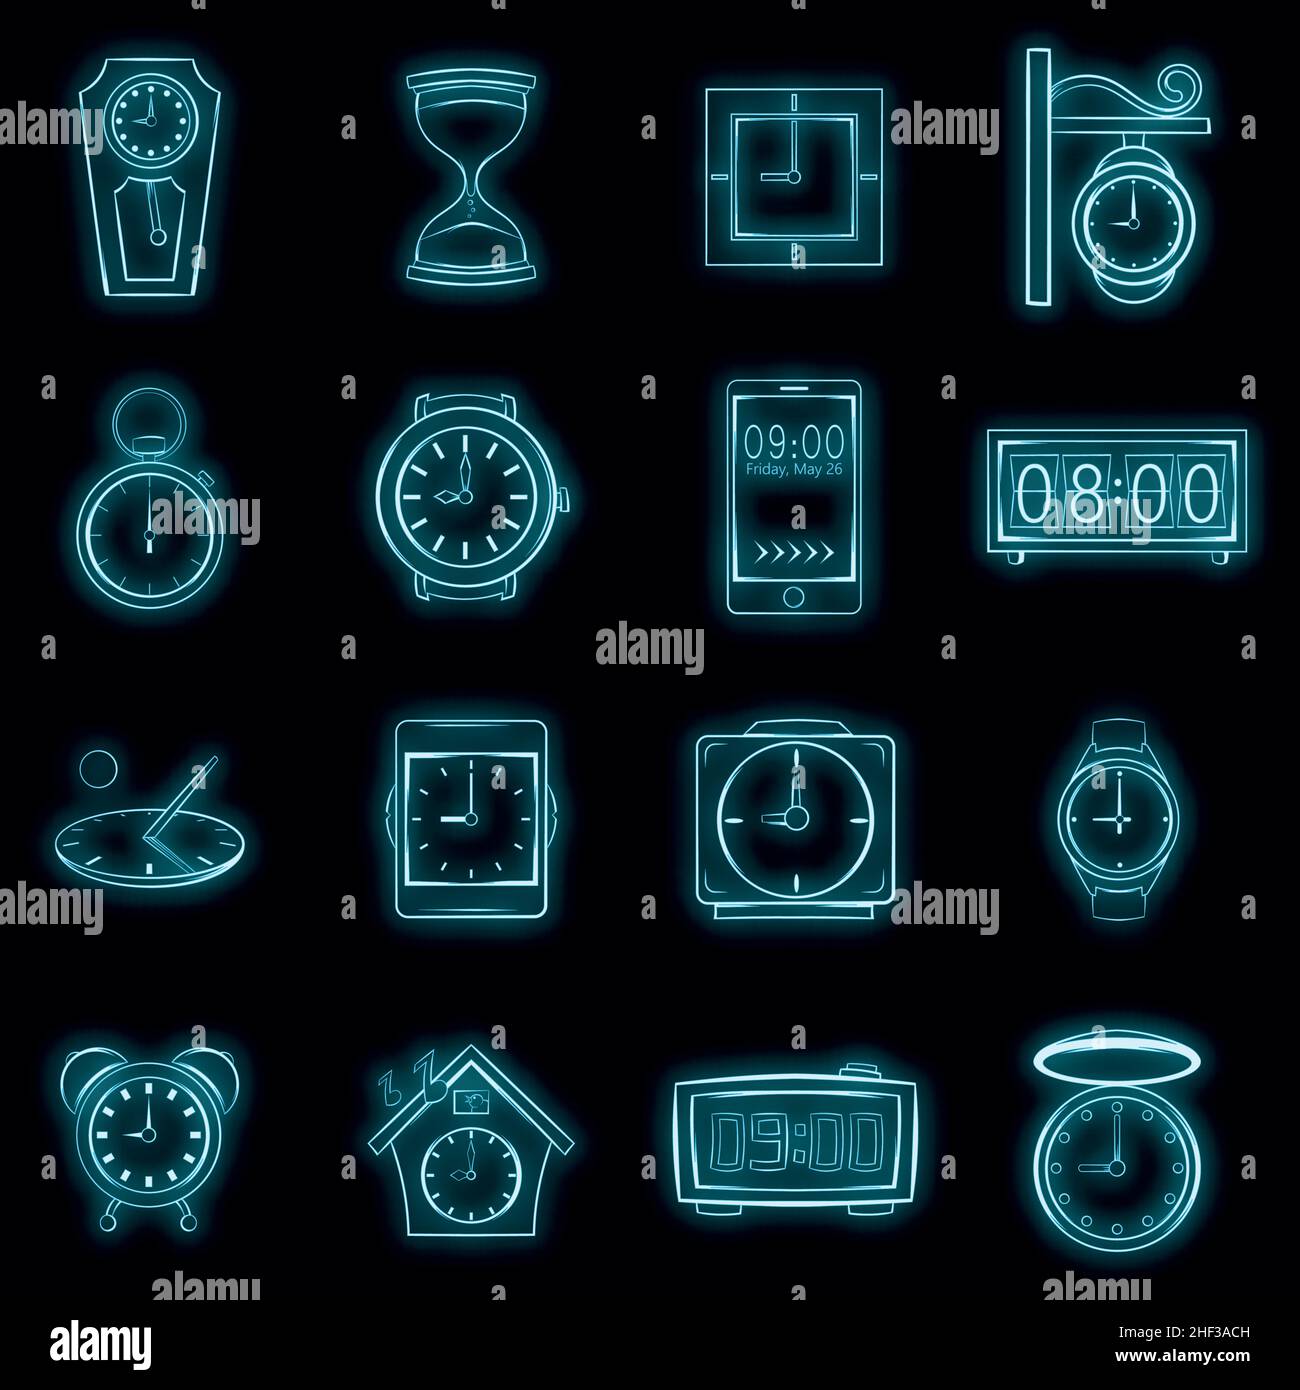 Iconos de reloj y hora en estilo neón aislados sobre un fondo negro Ilustración del Vector